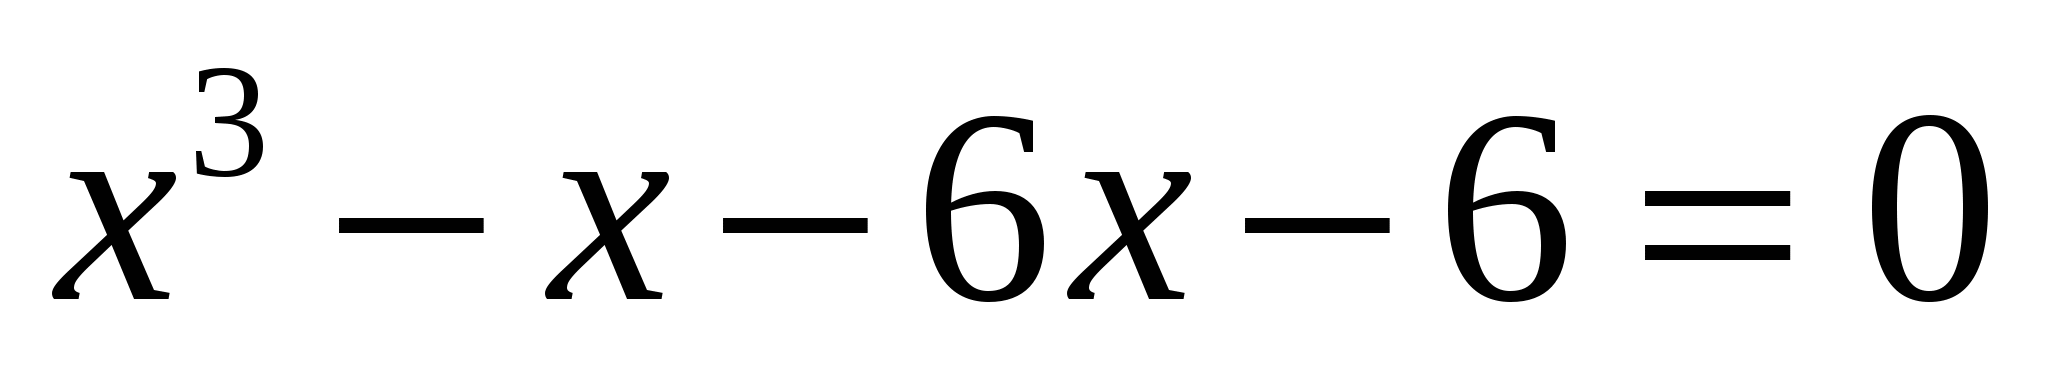 Панорамный урок по алгебре в 8 классе на тему «Решение алгебраических уравнений степени выше второй»